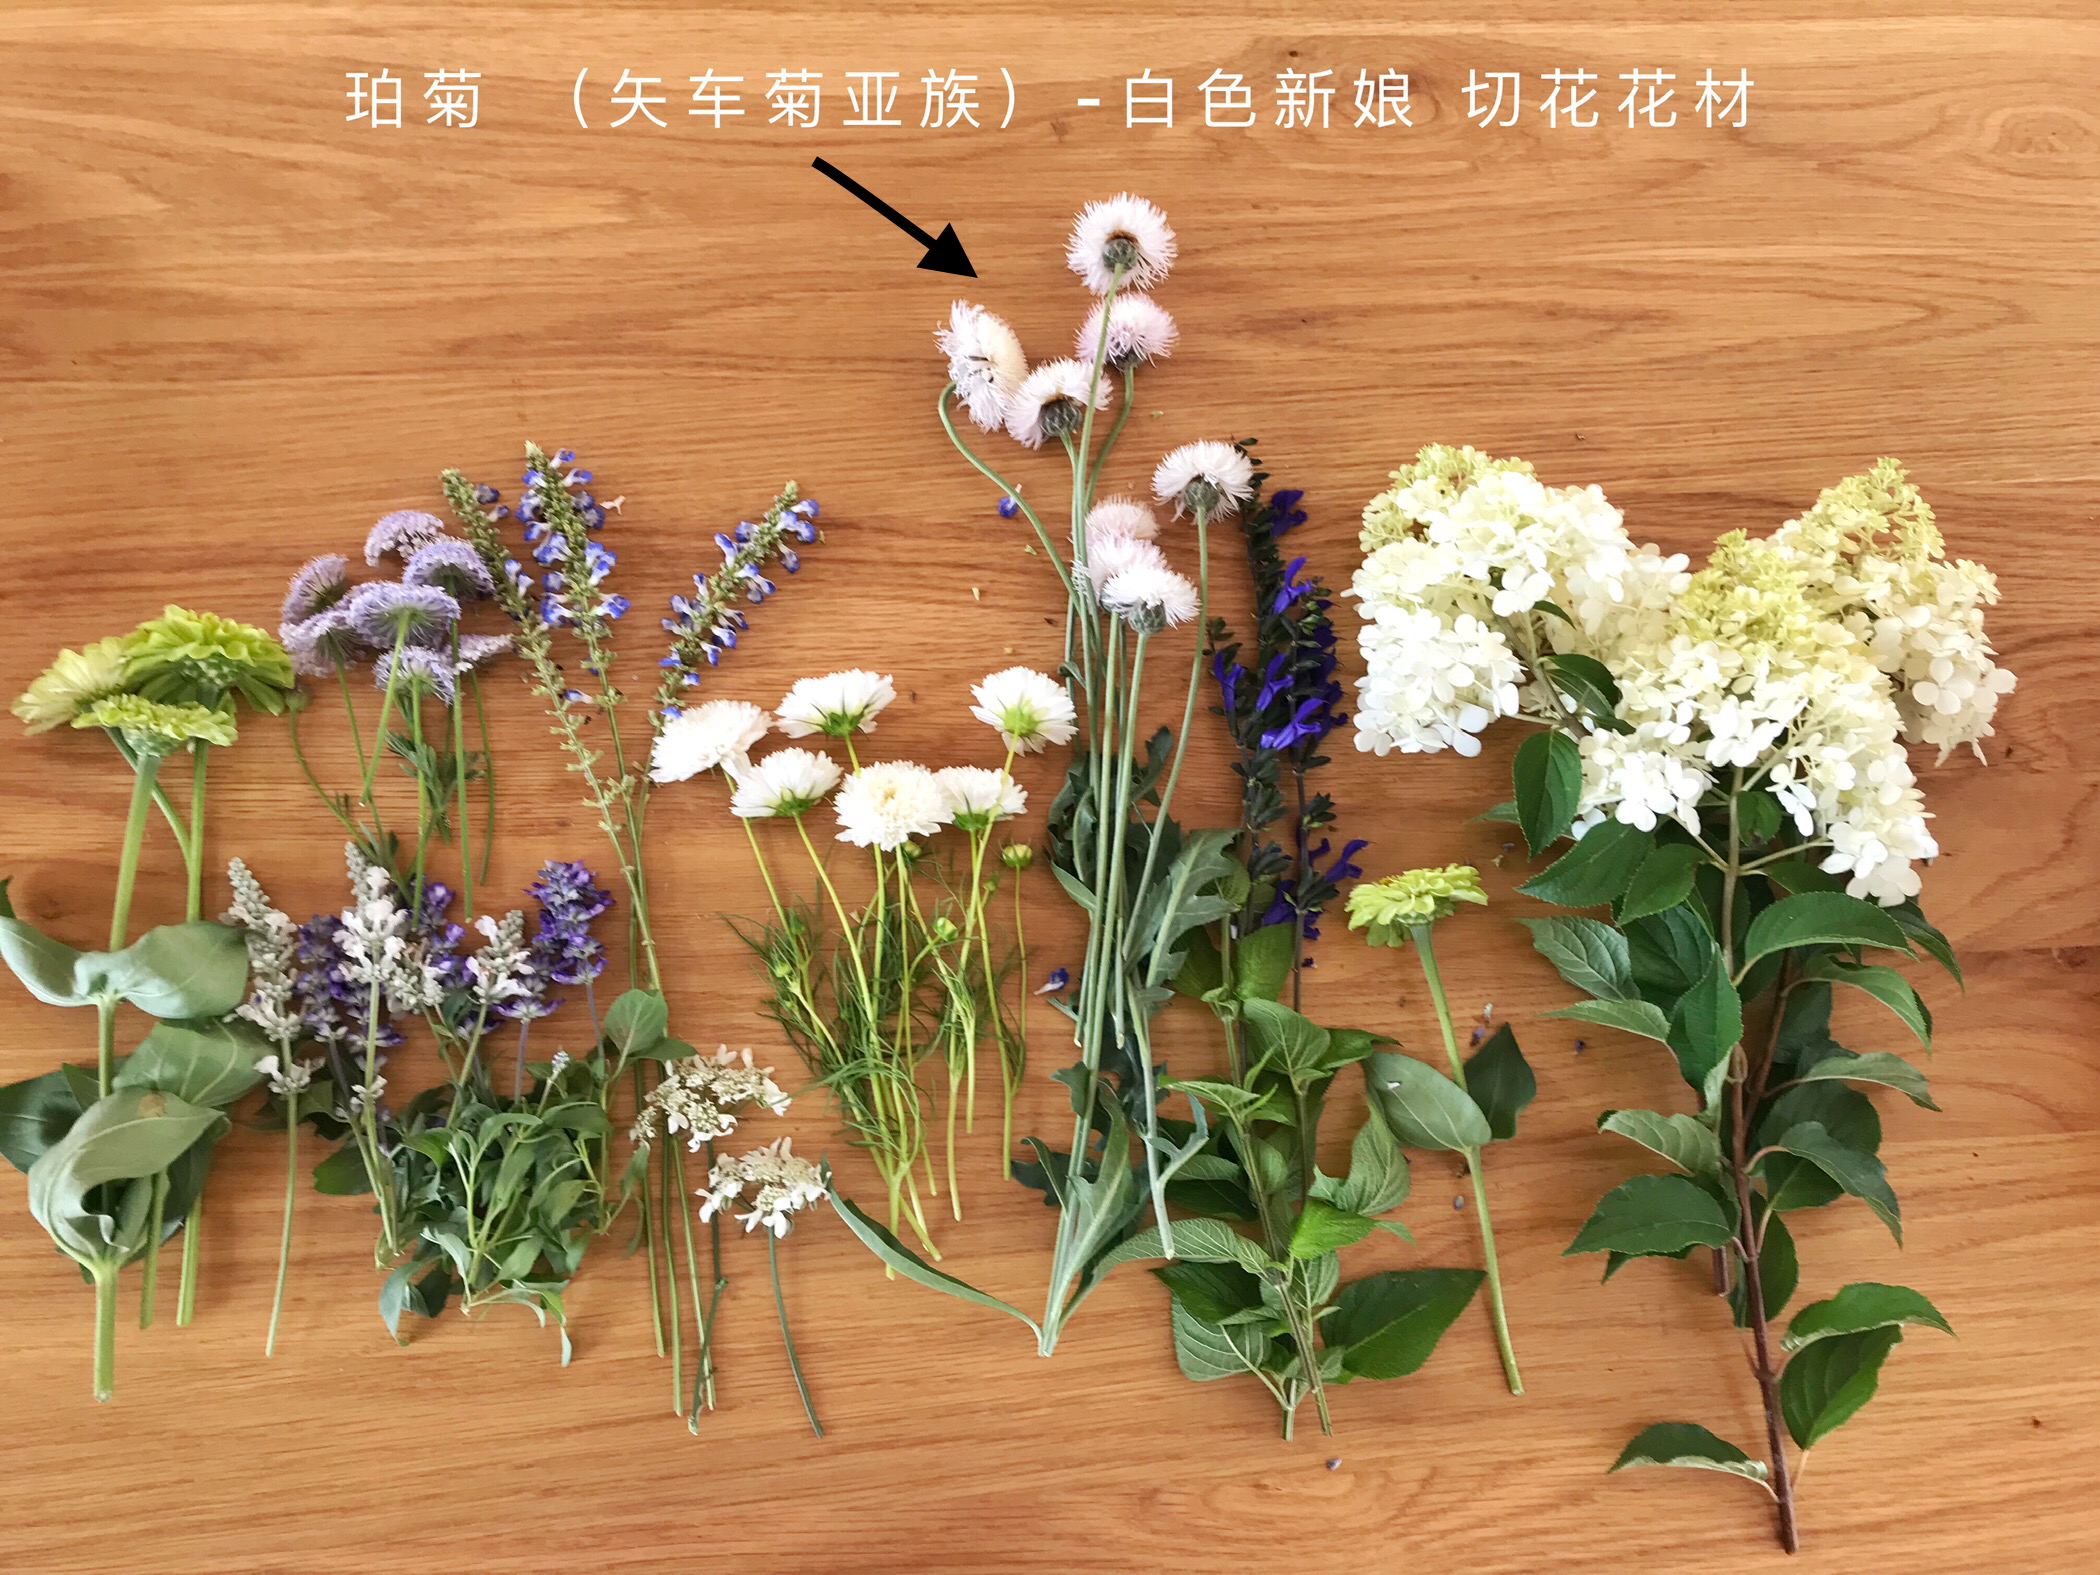 珀菊种子白色新娘 矢车菊亚属 切花预计2月18日左右发货